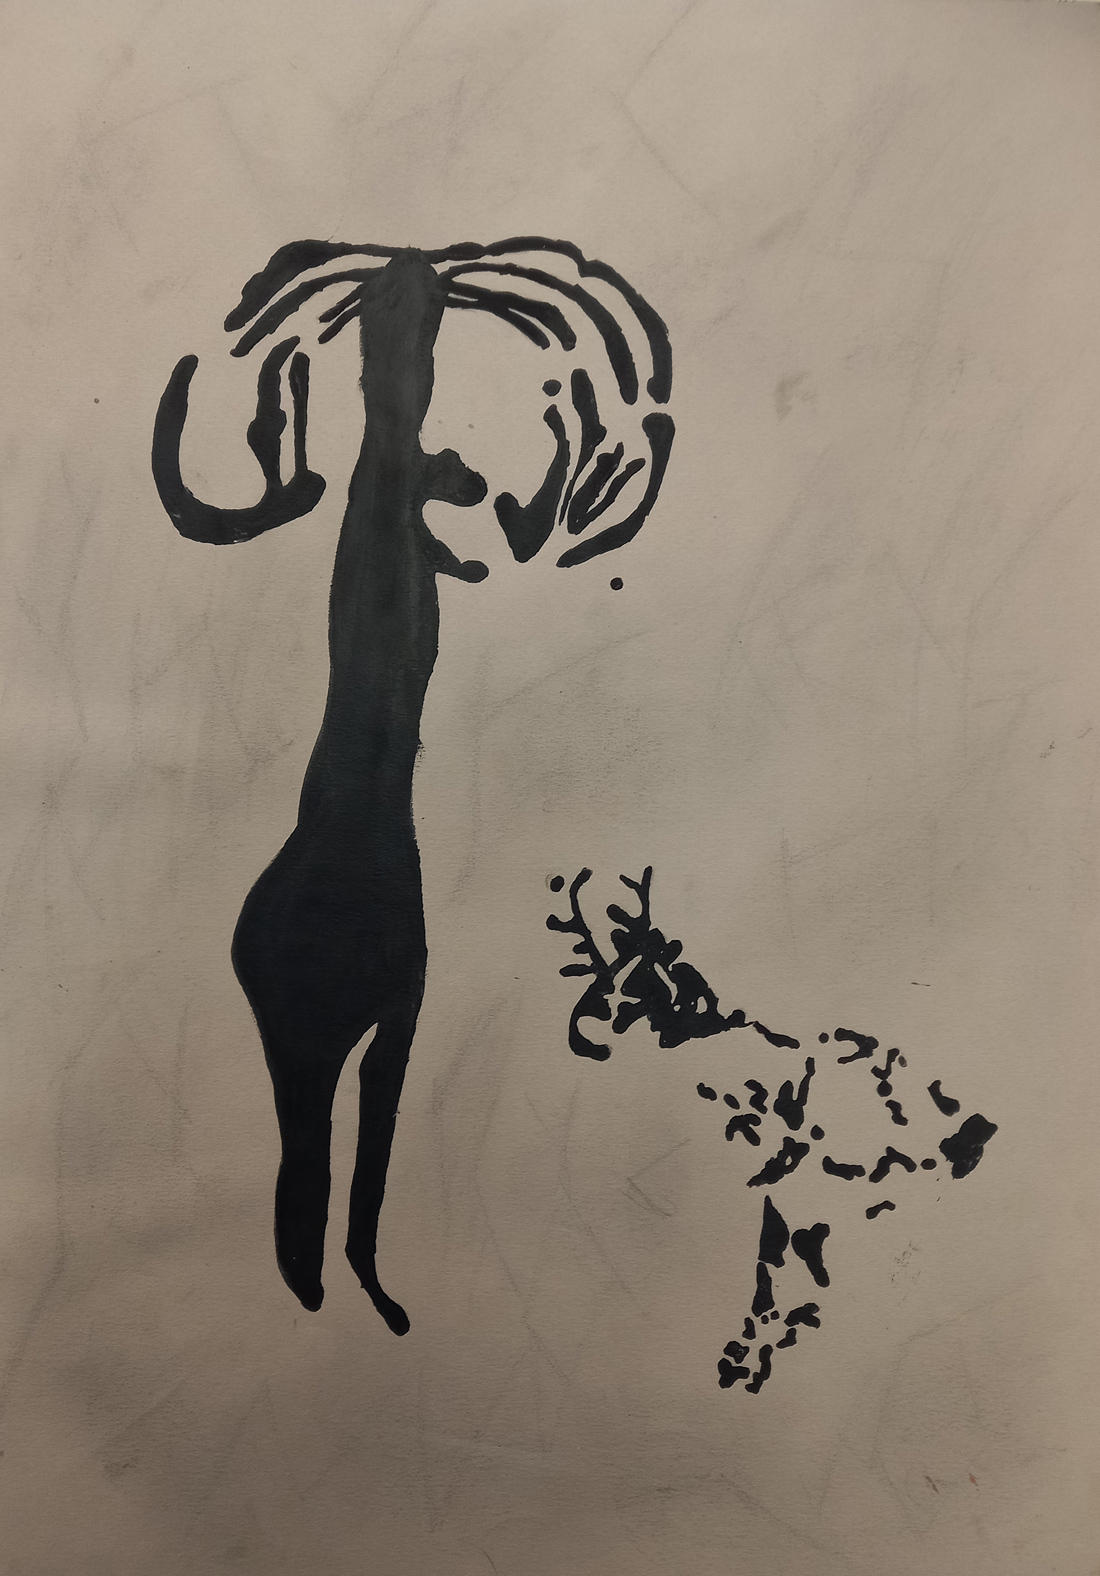 Pintura rupuestre elaborada por los alumnos de 1º Educación Secundaria del Centro Educativo Gençana, dentro del proyecto "Abuelísimos" sobre la prehistoria